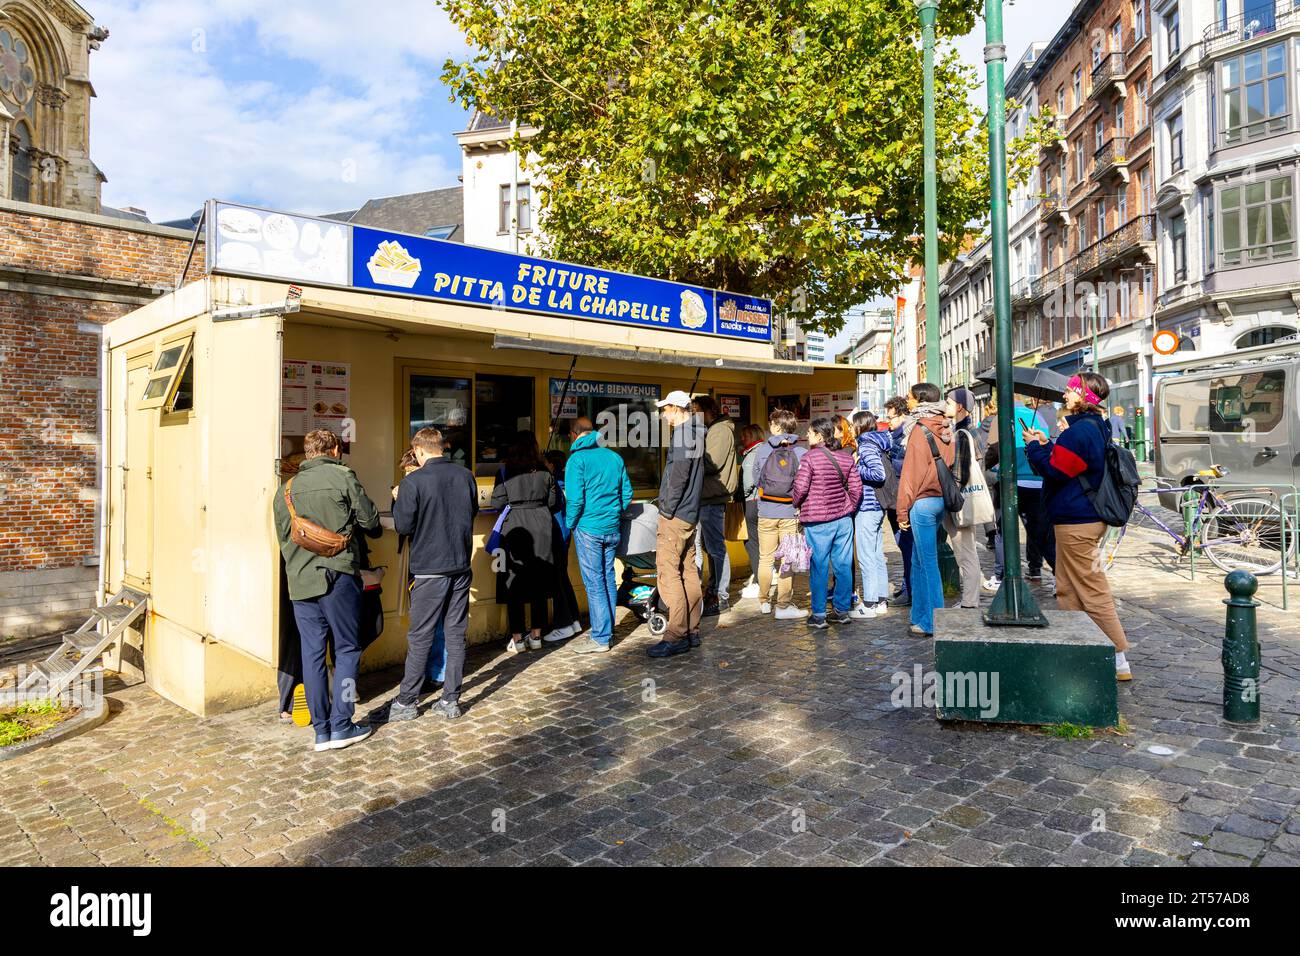 Gente che fa la fila per prendere patatine belghe al chiosco Friture Pitta De la Chapelle, Marollen, Bruxelles, Belgio Foto Stock